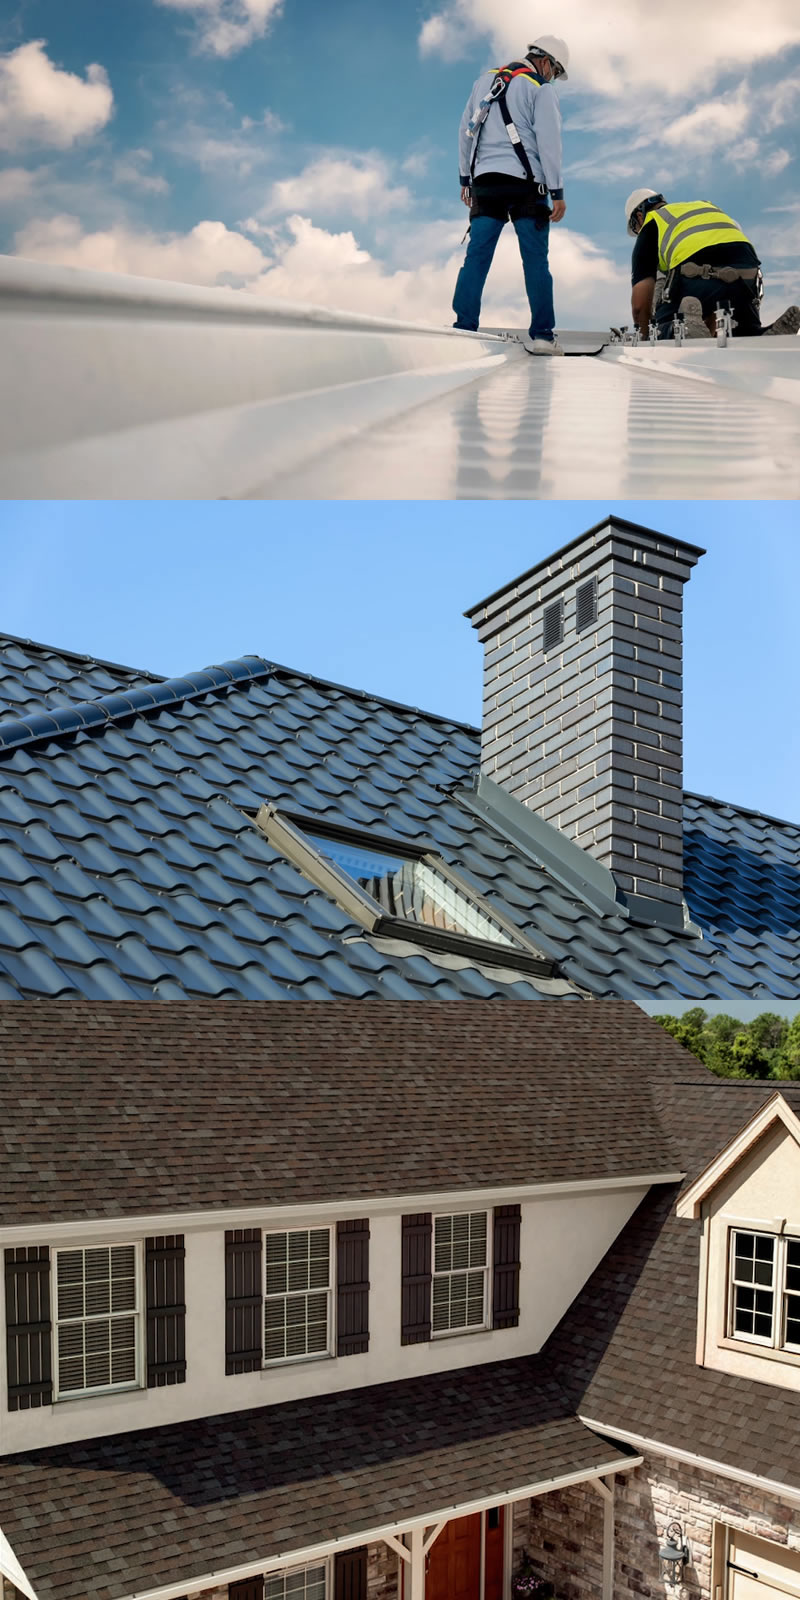 Roofing Contractor, Solar Panels, Roof Ventilation, Gutters / www.lscgcontractors.com